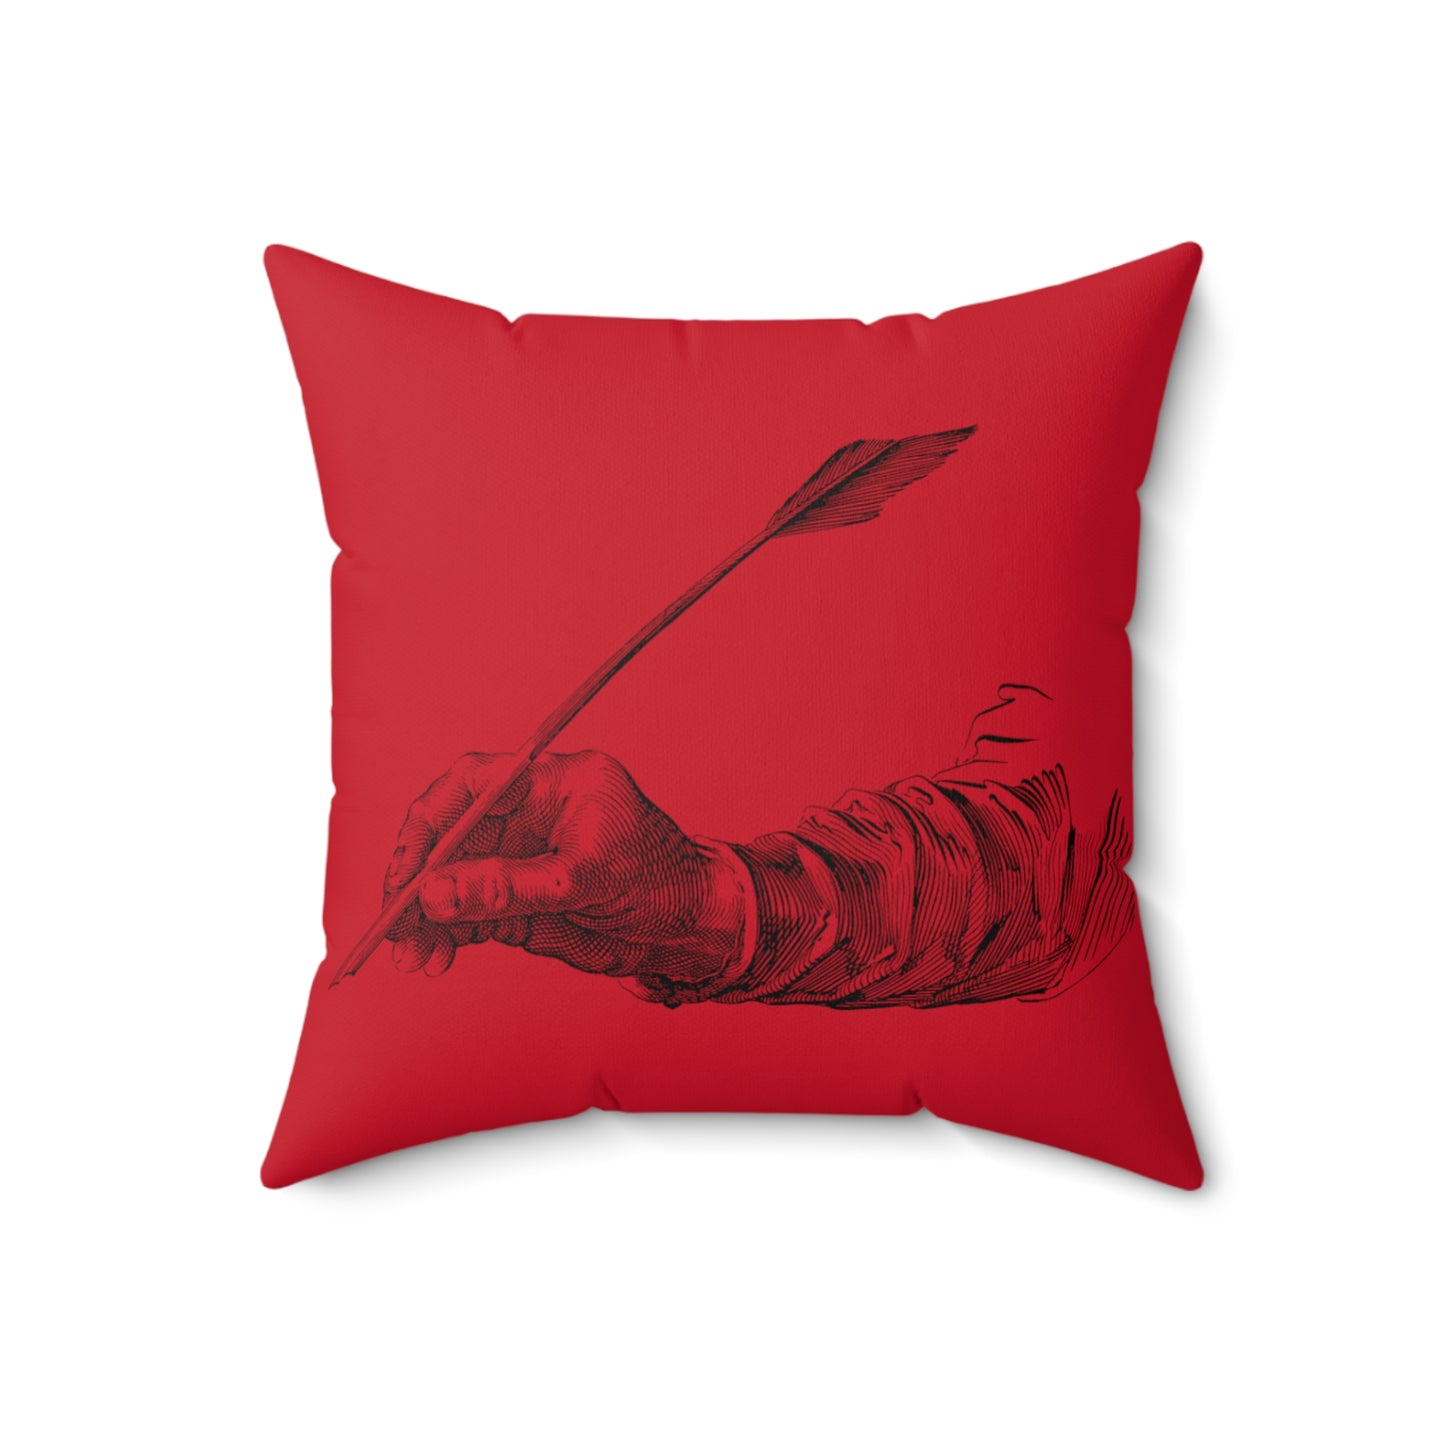 Spun Polyester Square Pillow: Writing Dark Red